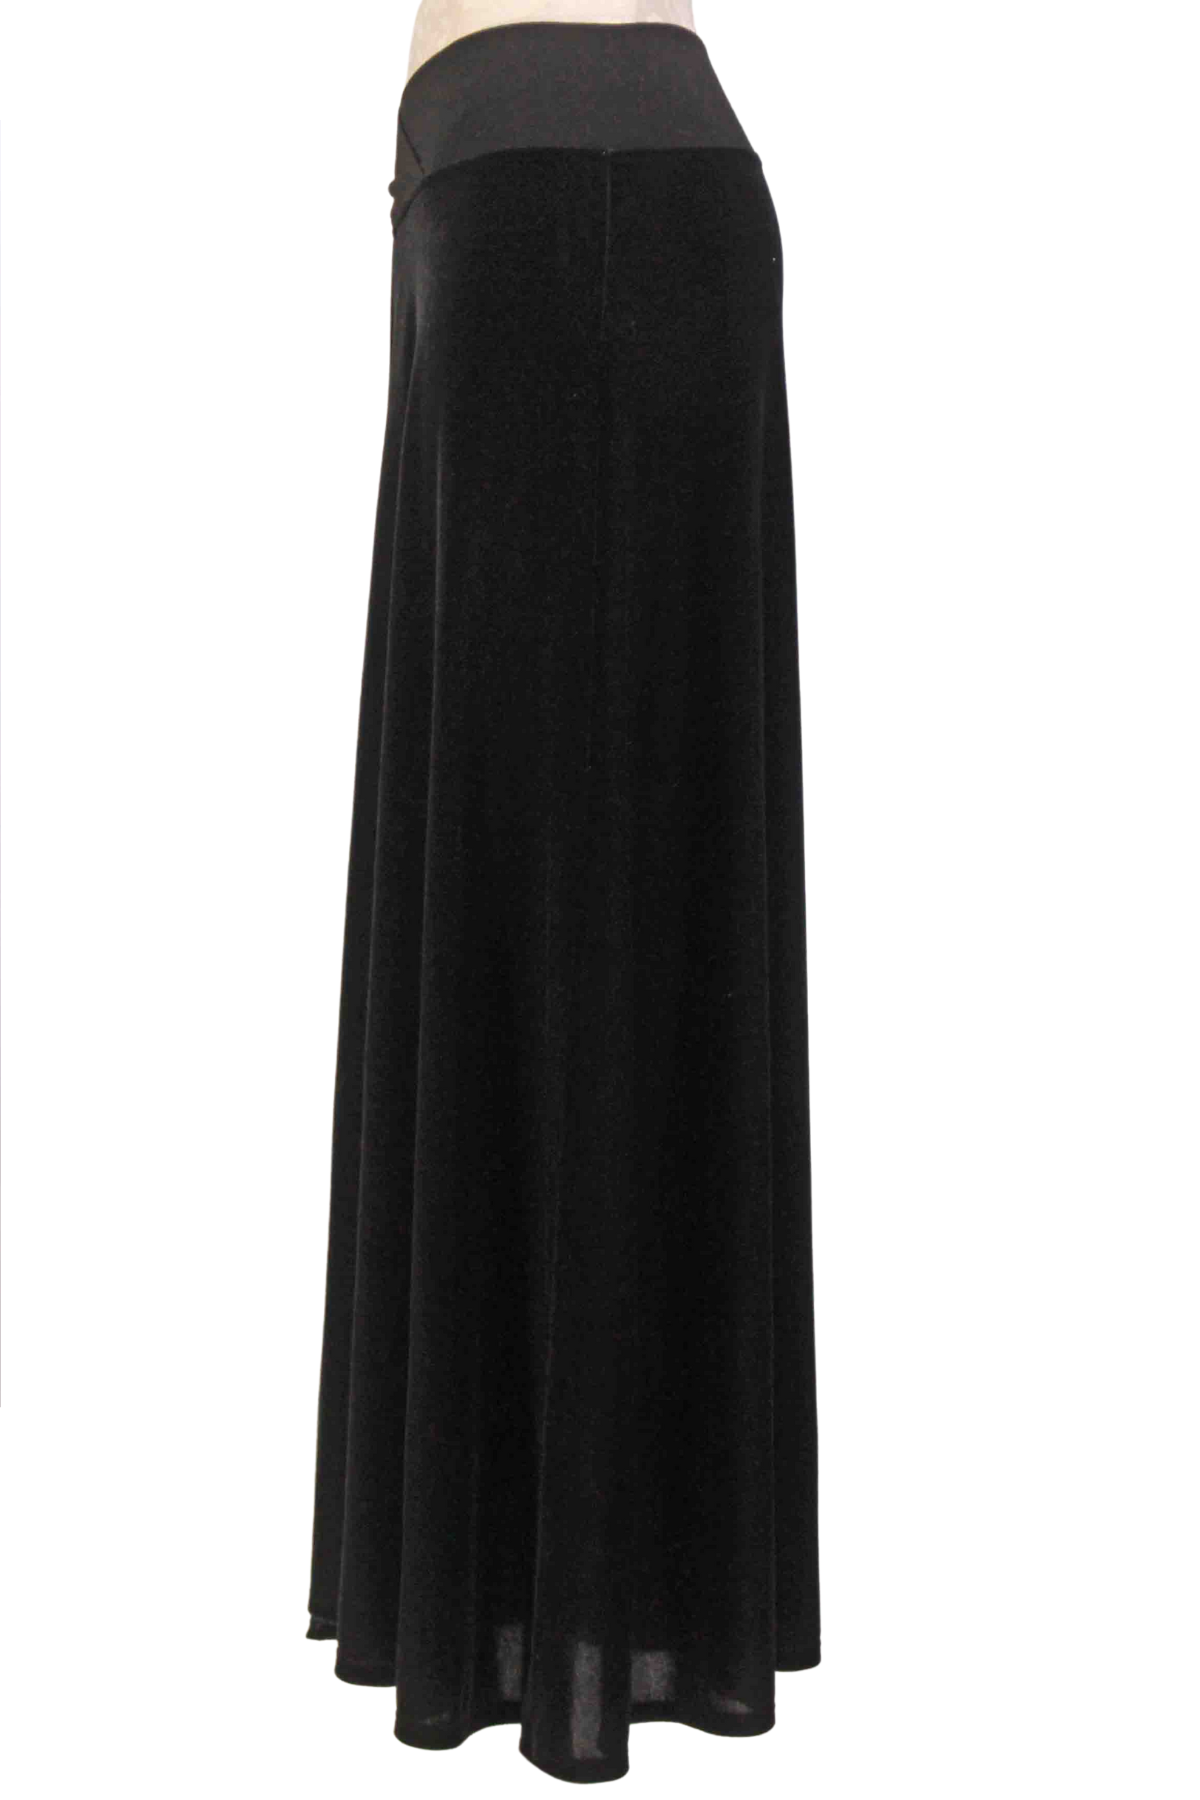 side view of Black Velvet Vera Skirt by Testimony